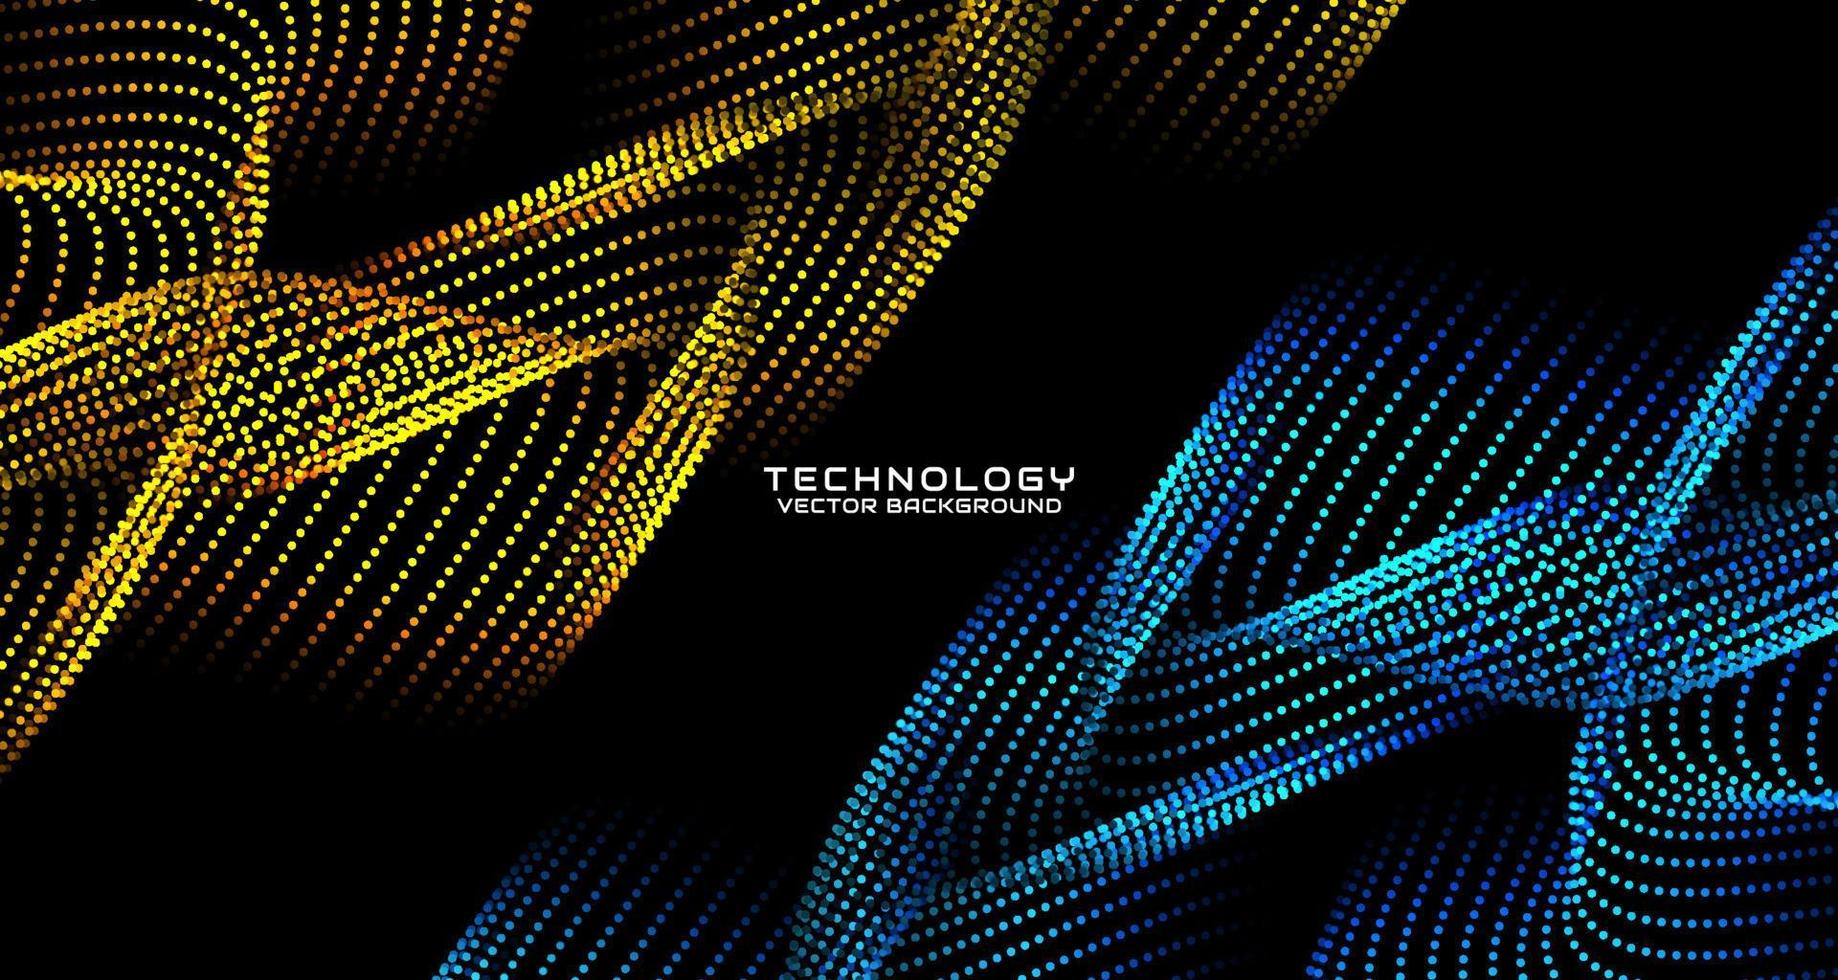 gul techno abstrakt bakgrund på mörk Plats med vinka partiklar stil effekt. grafisk design element med 3d rör på sig prickar strömma begrepp för baner, flygblad, kort, broschyr omslag, eller landning sida vektor